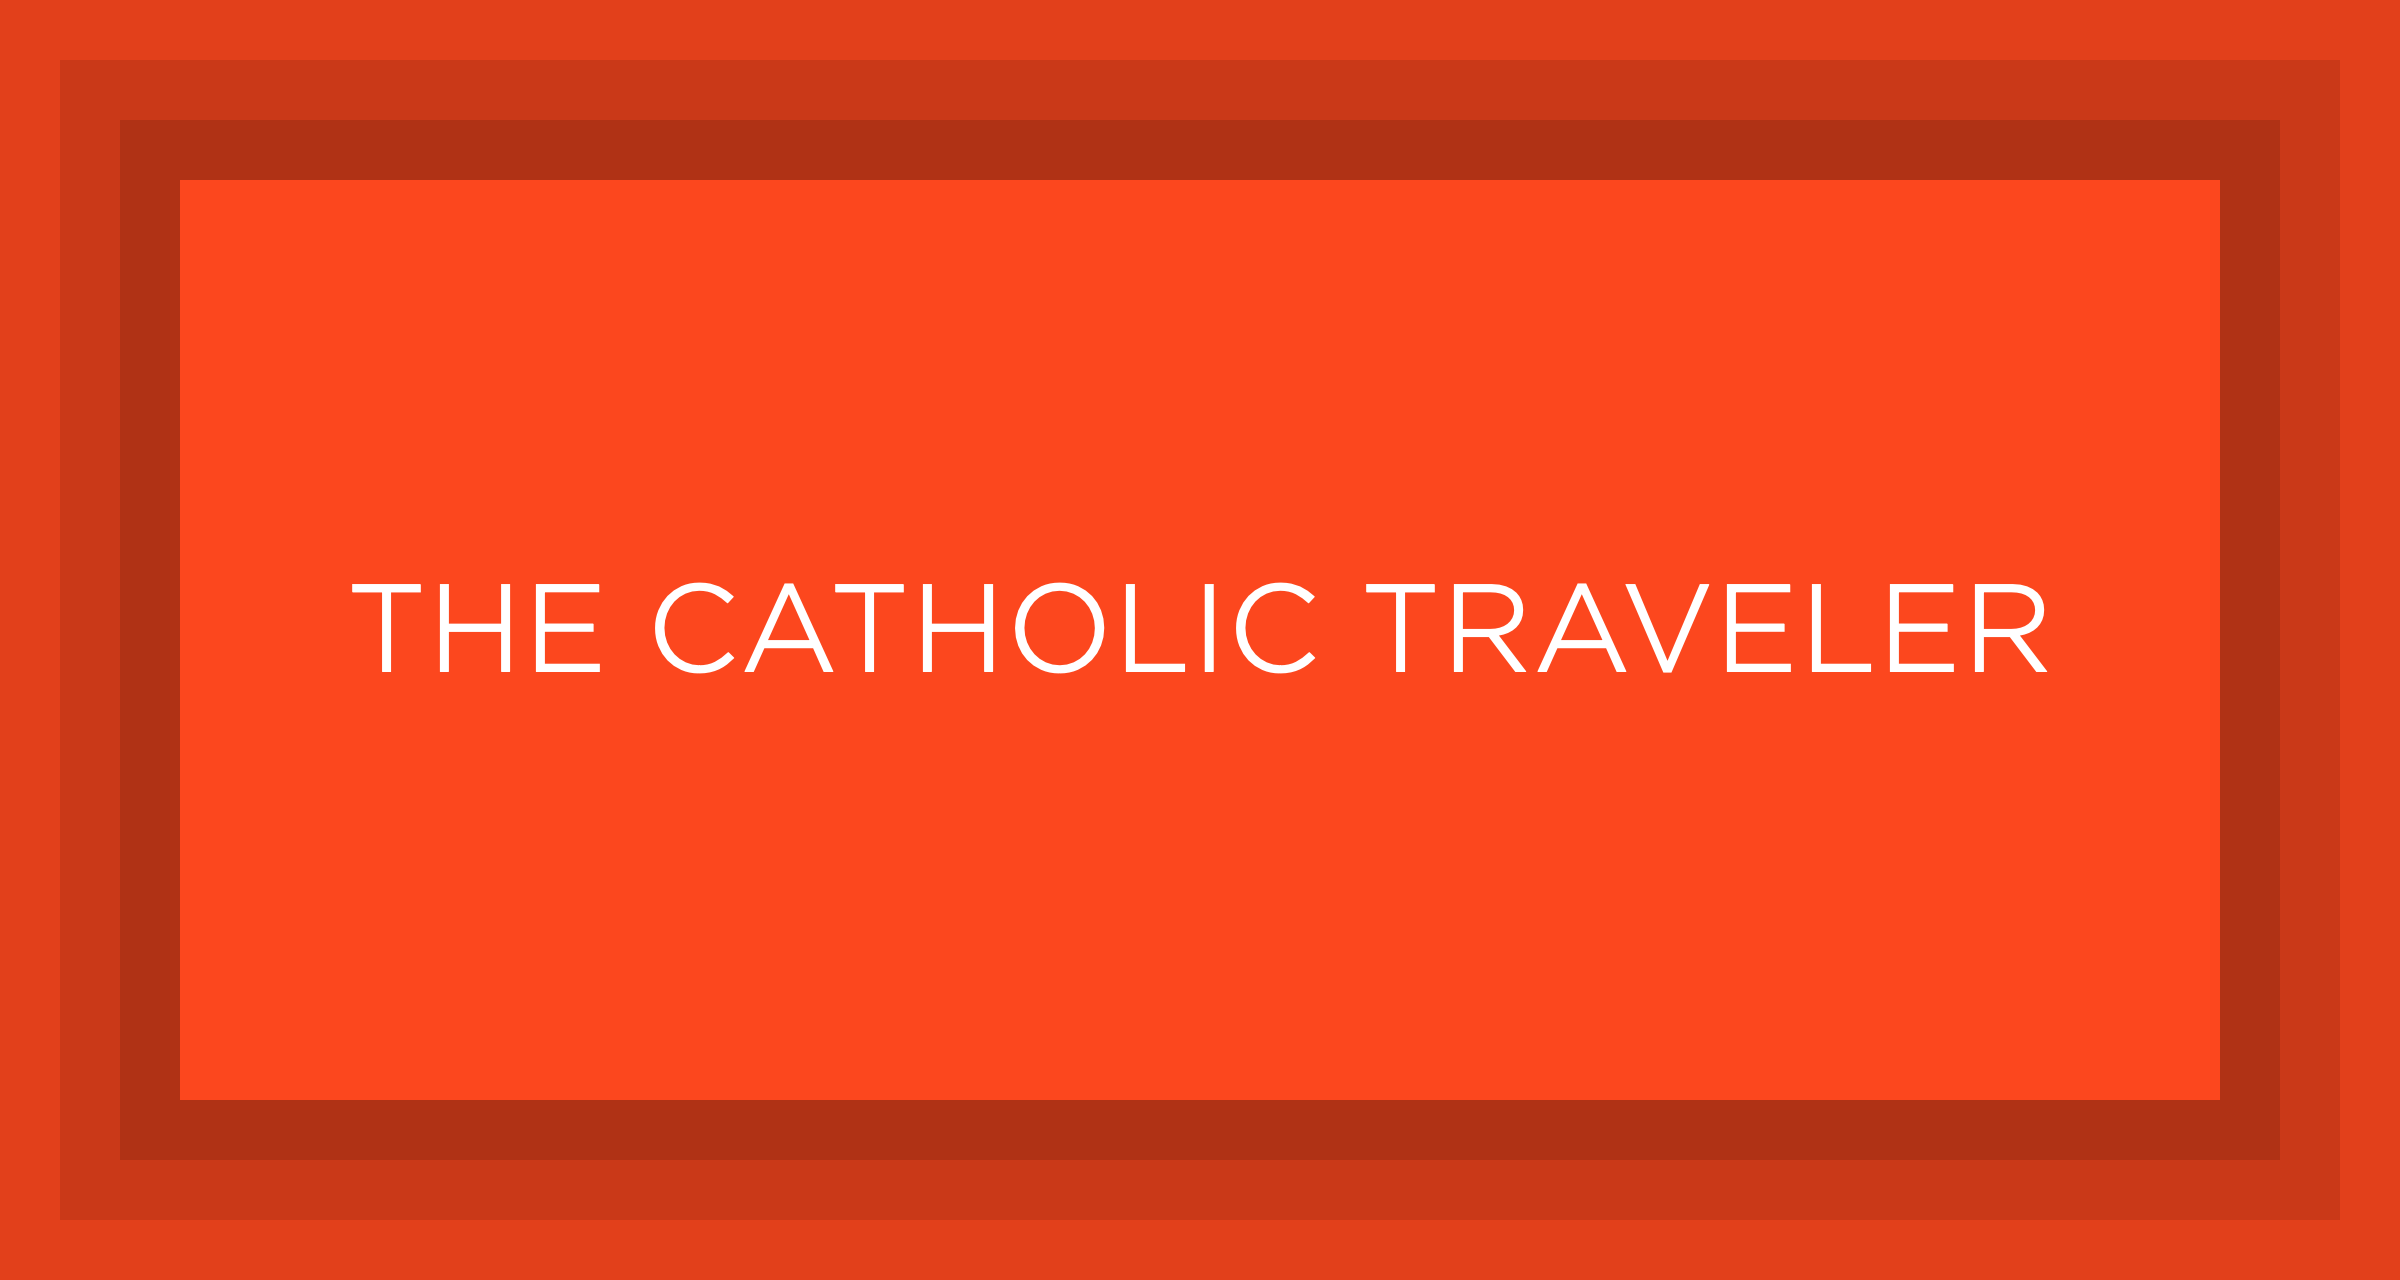 The Catholic Traveler